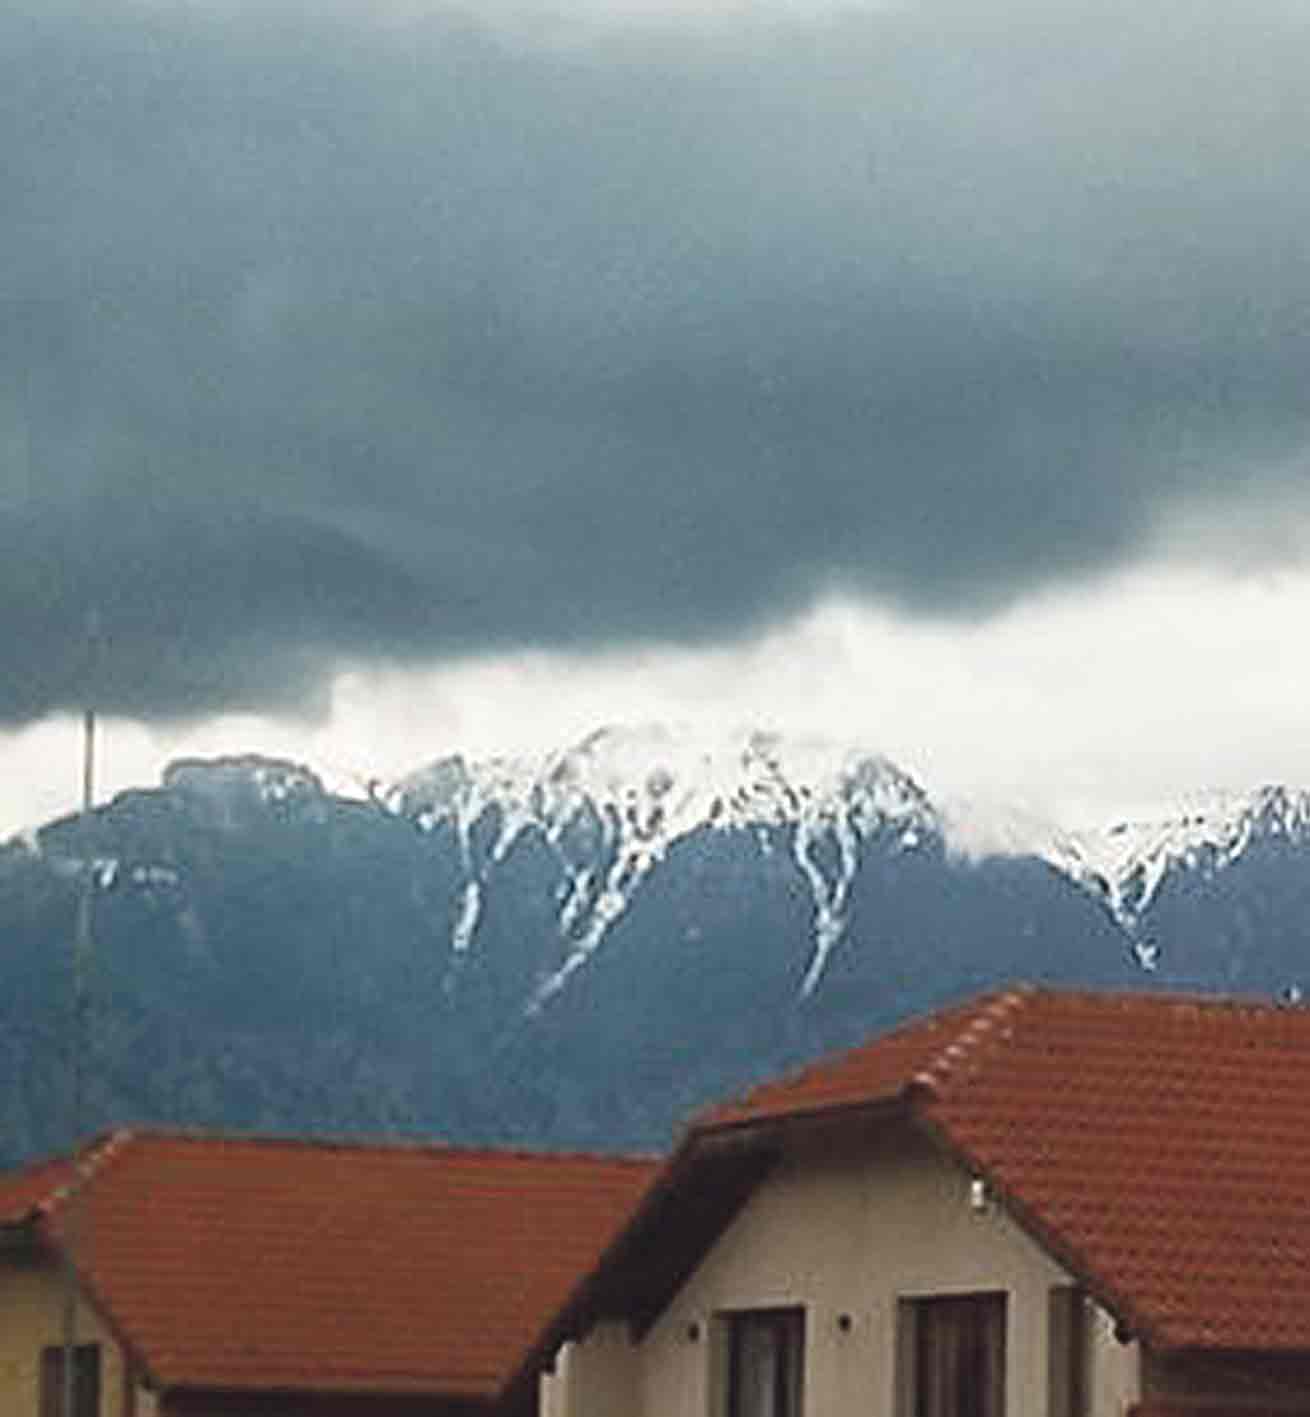 Румунський торнадо відступив, але дощі припиняться тільки наприкінці весни